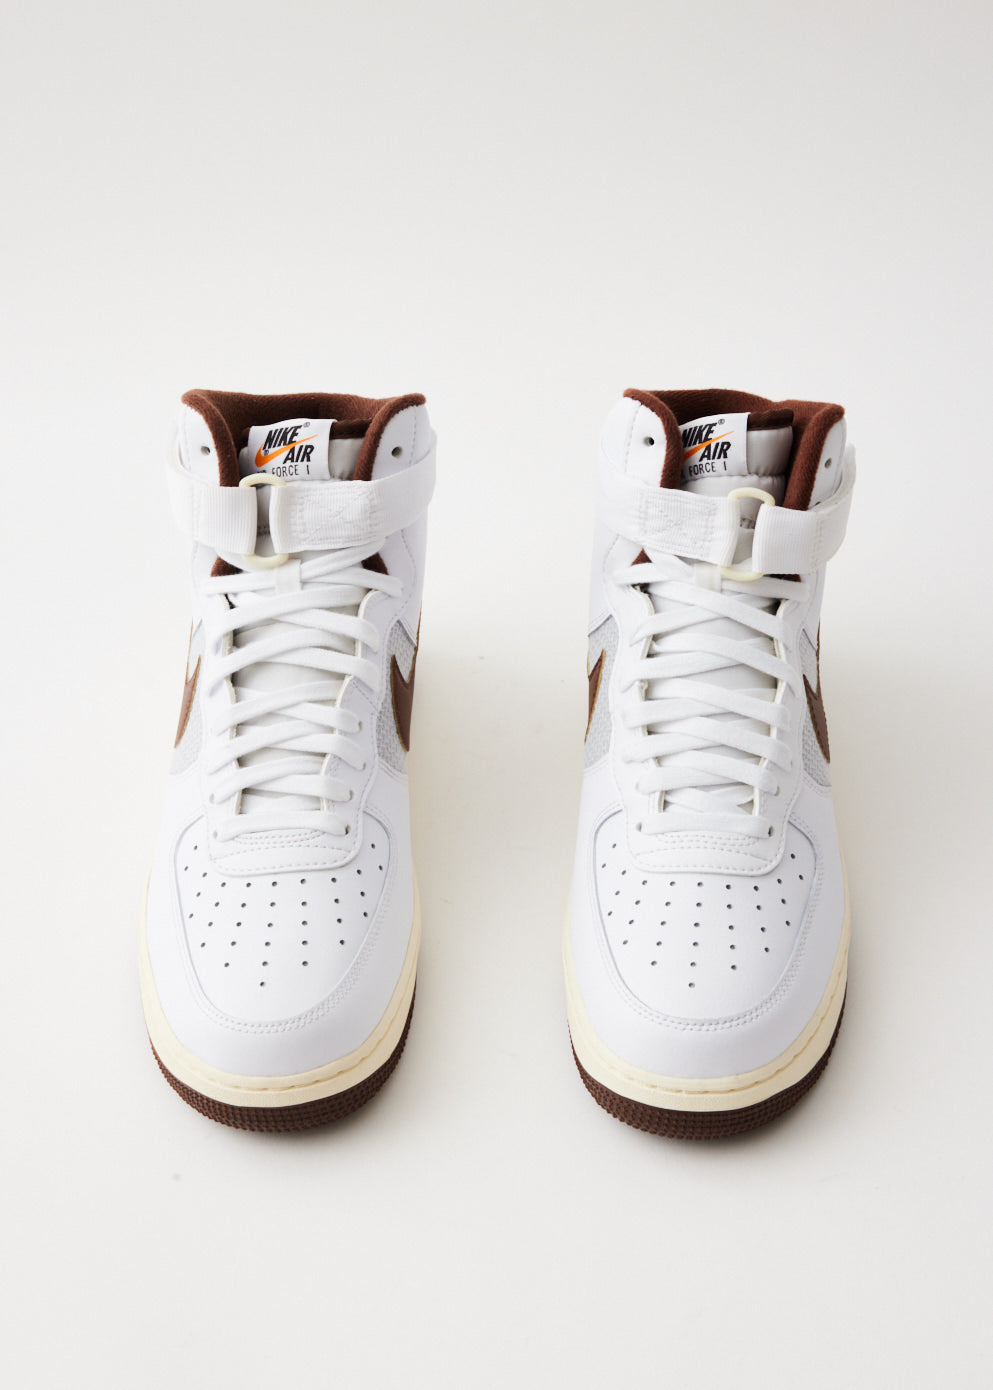 Sneakers76 on Instagram: “NIKE AIR FORCE 1 '07 LV8 in store + online  @sneakers76 ( link in bio ) #nike …